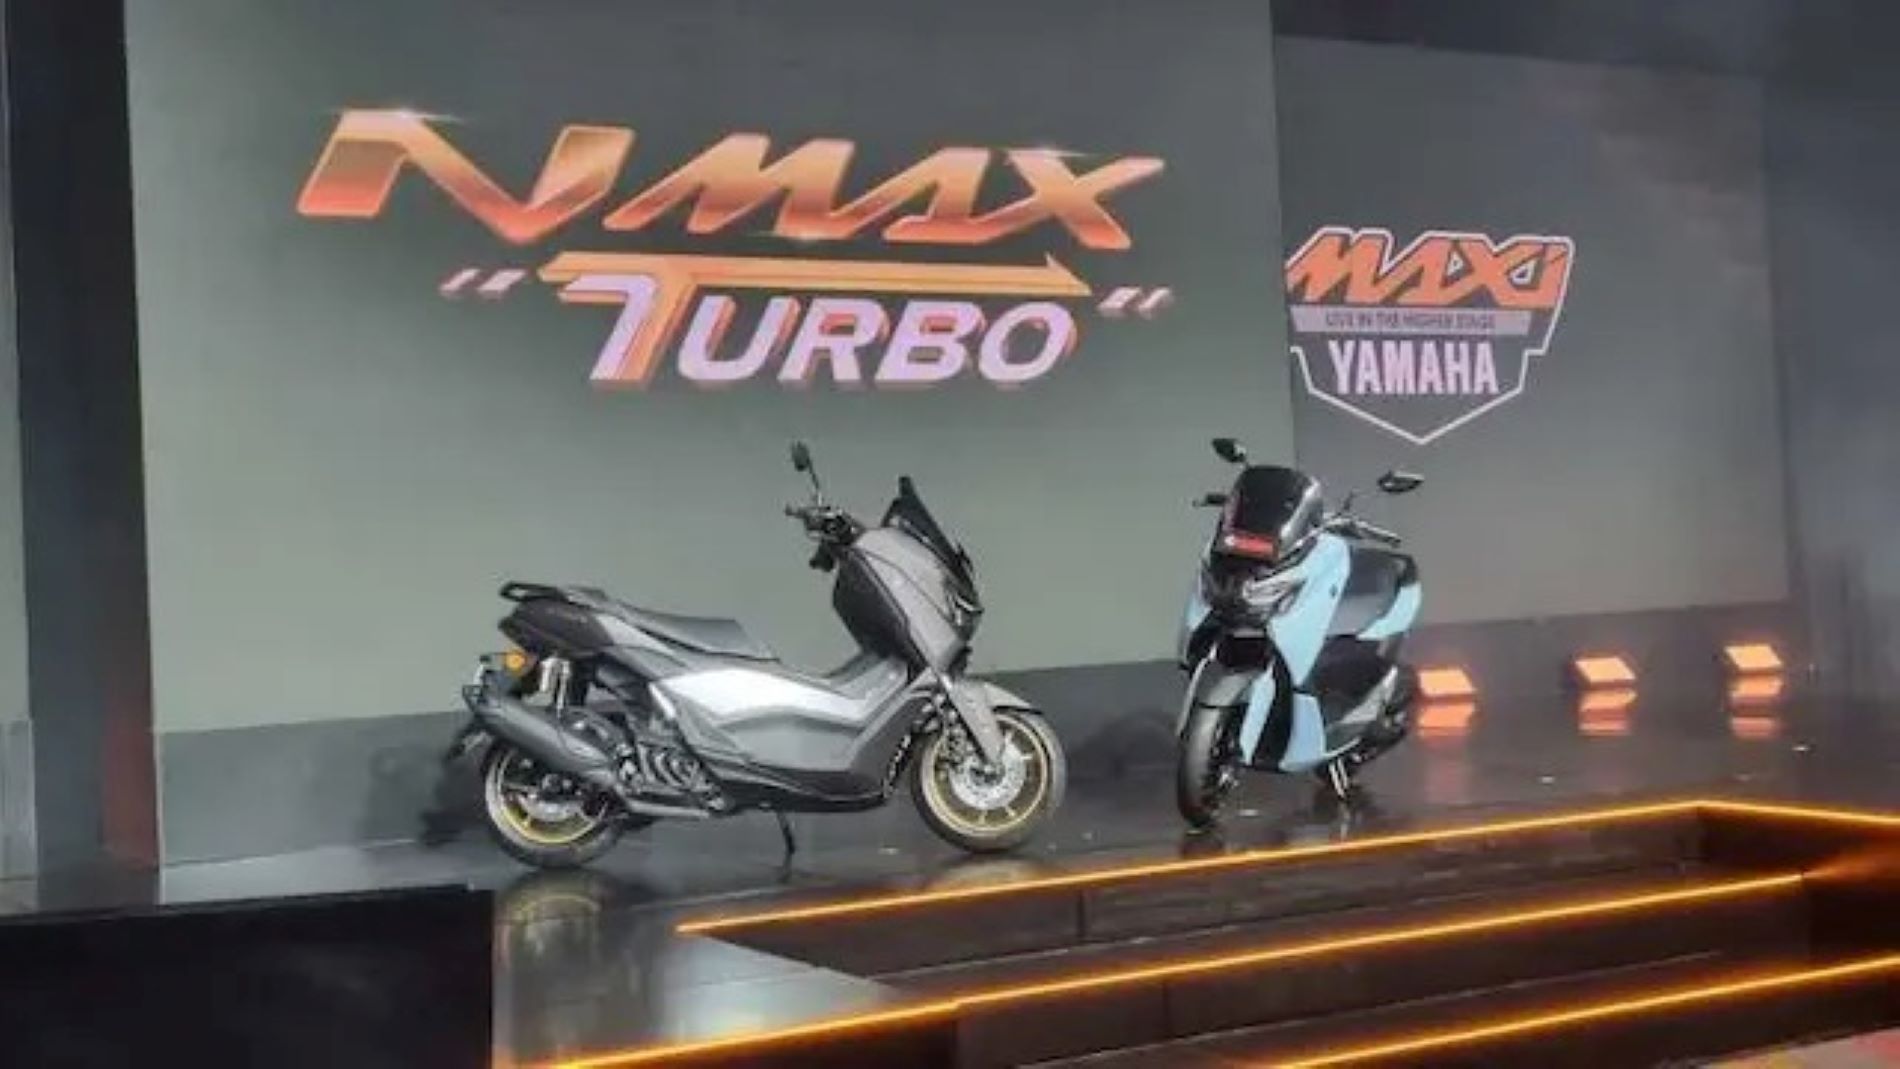 Yamaha Indonesia Motor Manufacturing meluncurkan Nmax Turbo di Jakarta beberapa hari lalu.